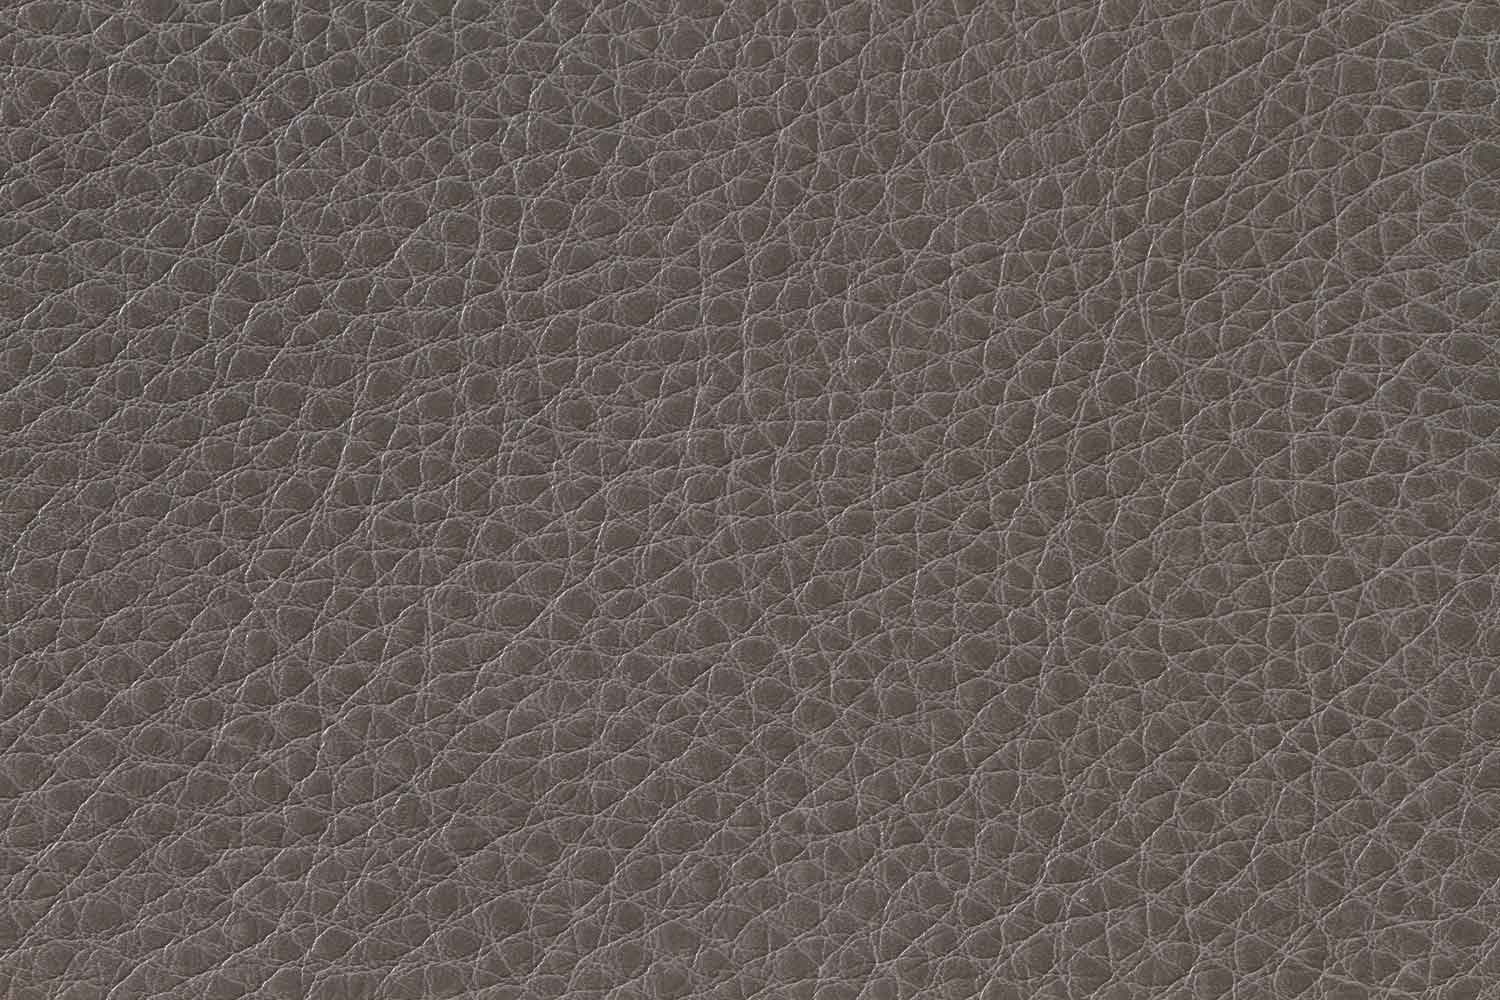 Homelegance Springer Sectional Sofa Set - Grey - Bonded Leather Match